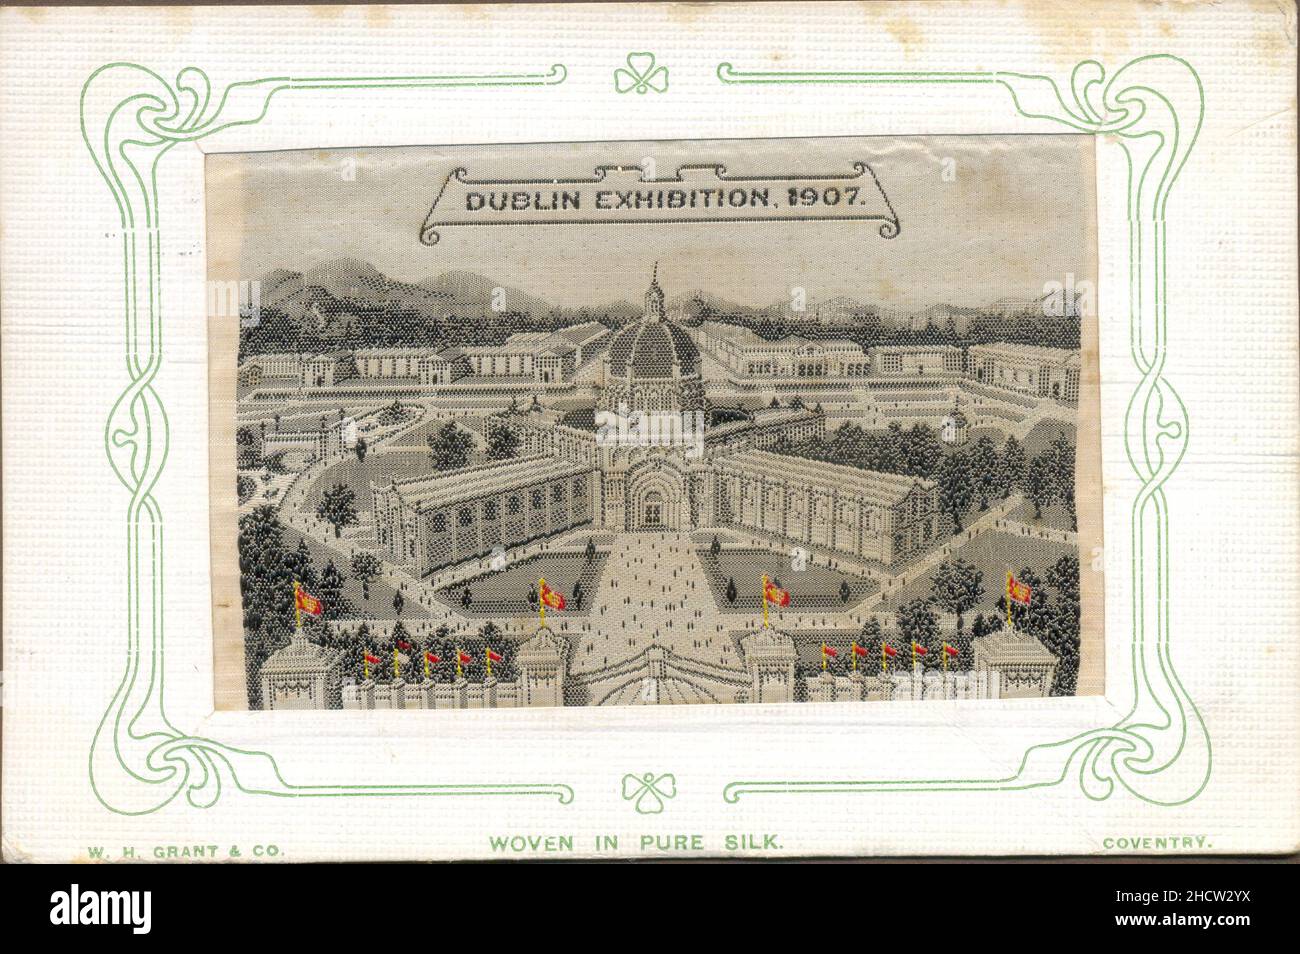 Cartolina ricordo in seta intrecciata di W H Grant, Coventry per la mostra di Dublino 1907 Foto Stock